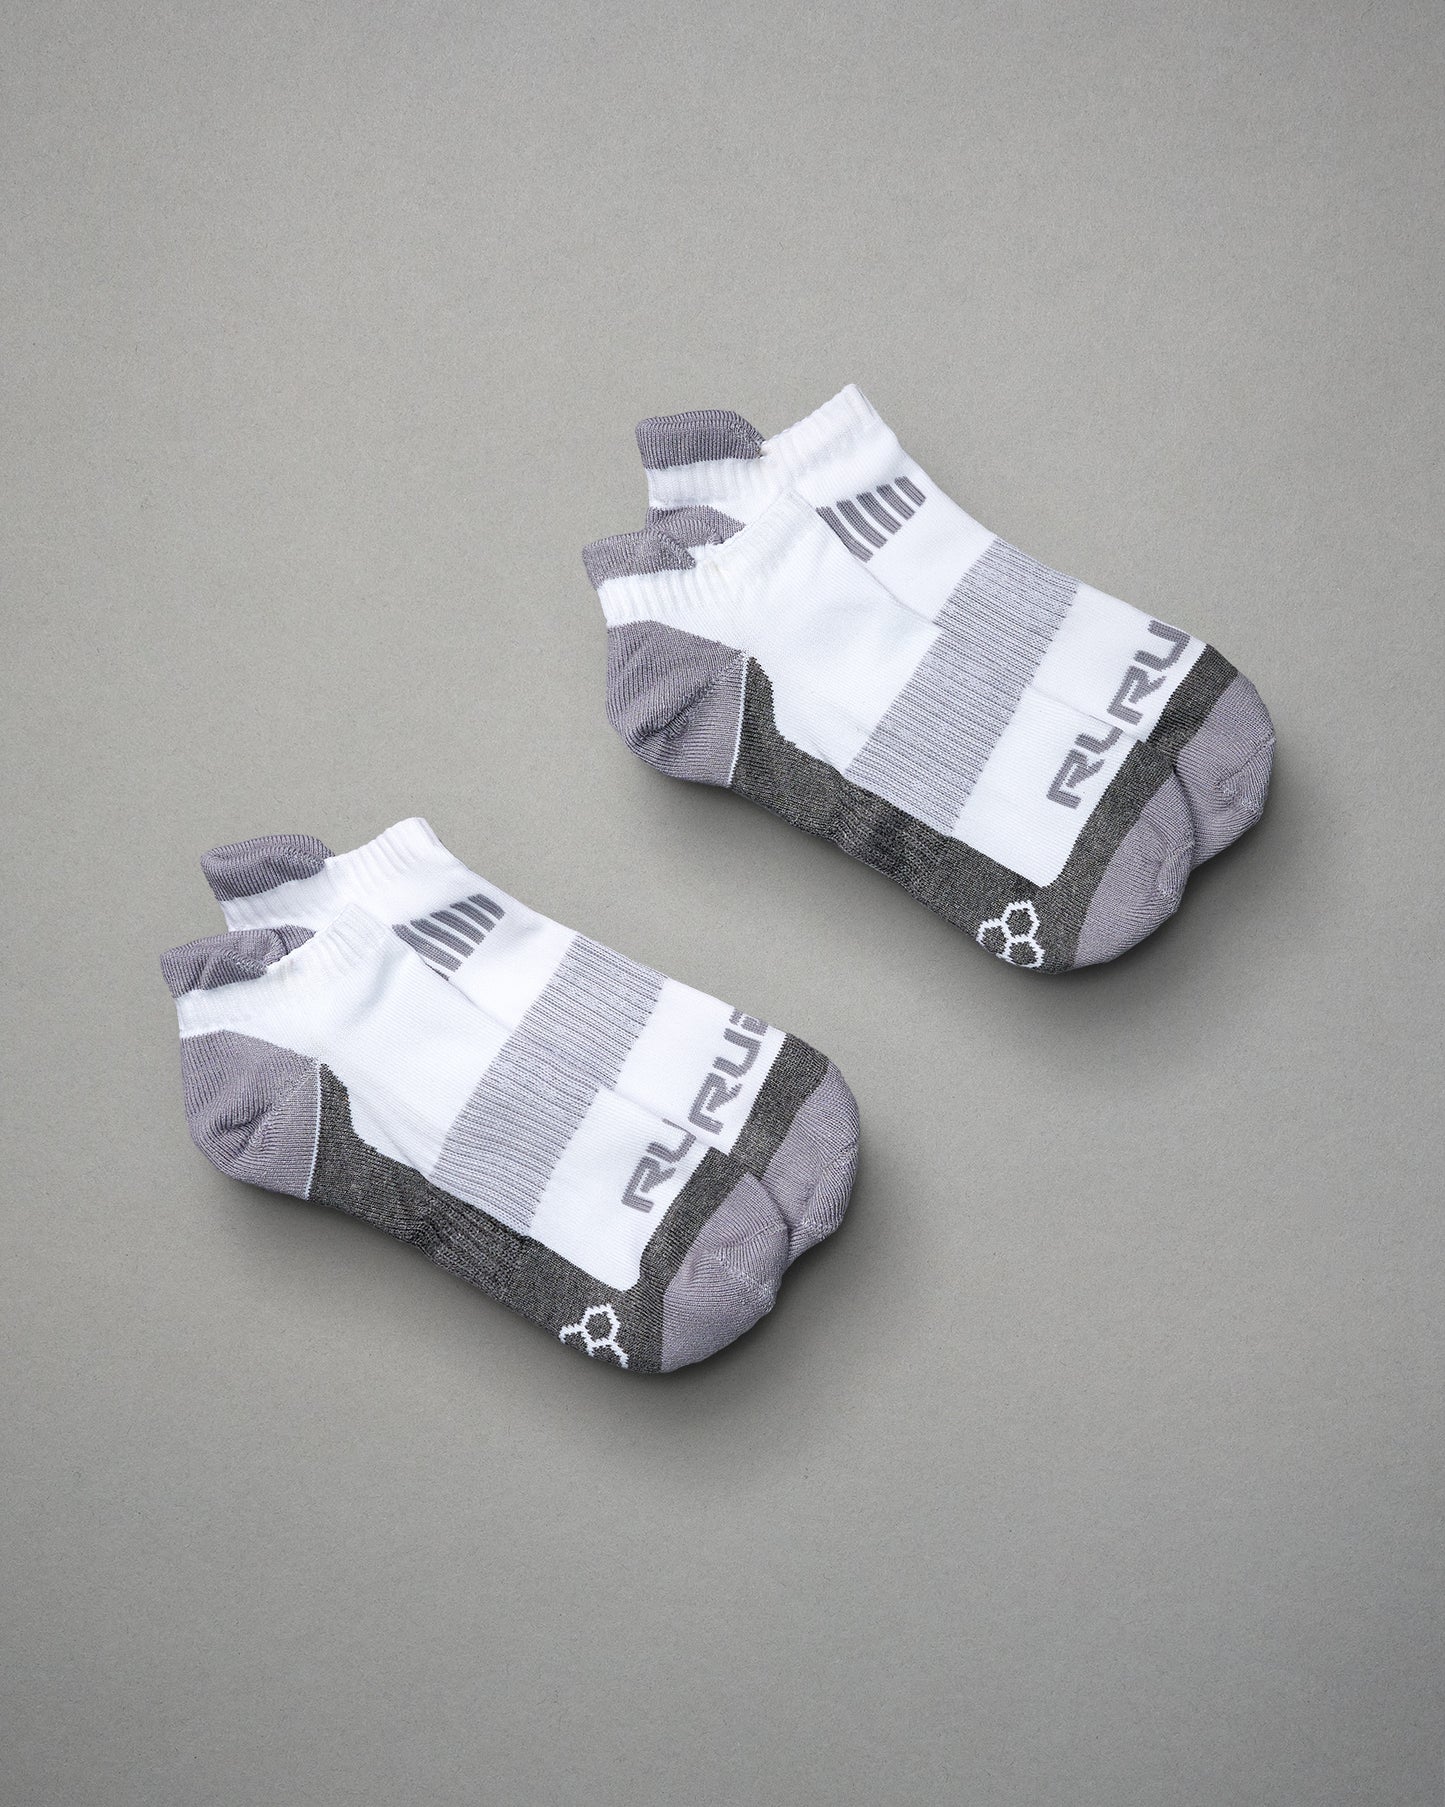 RUDIS Cushion Ankle Socks (2 Pair)